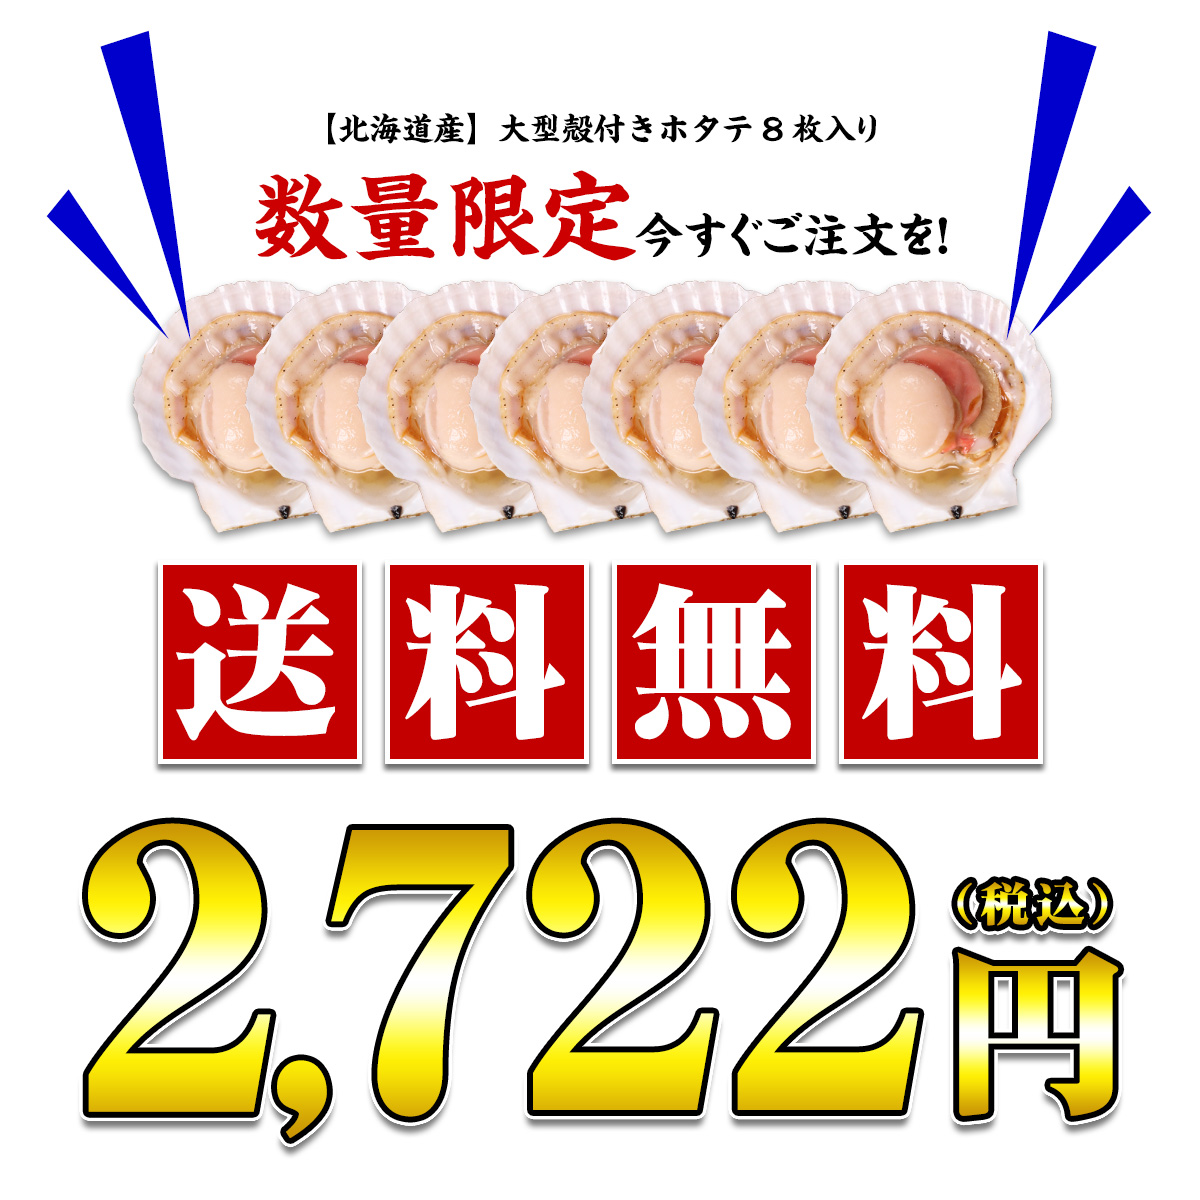 通常価格2,722円